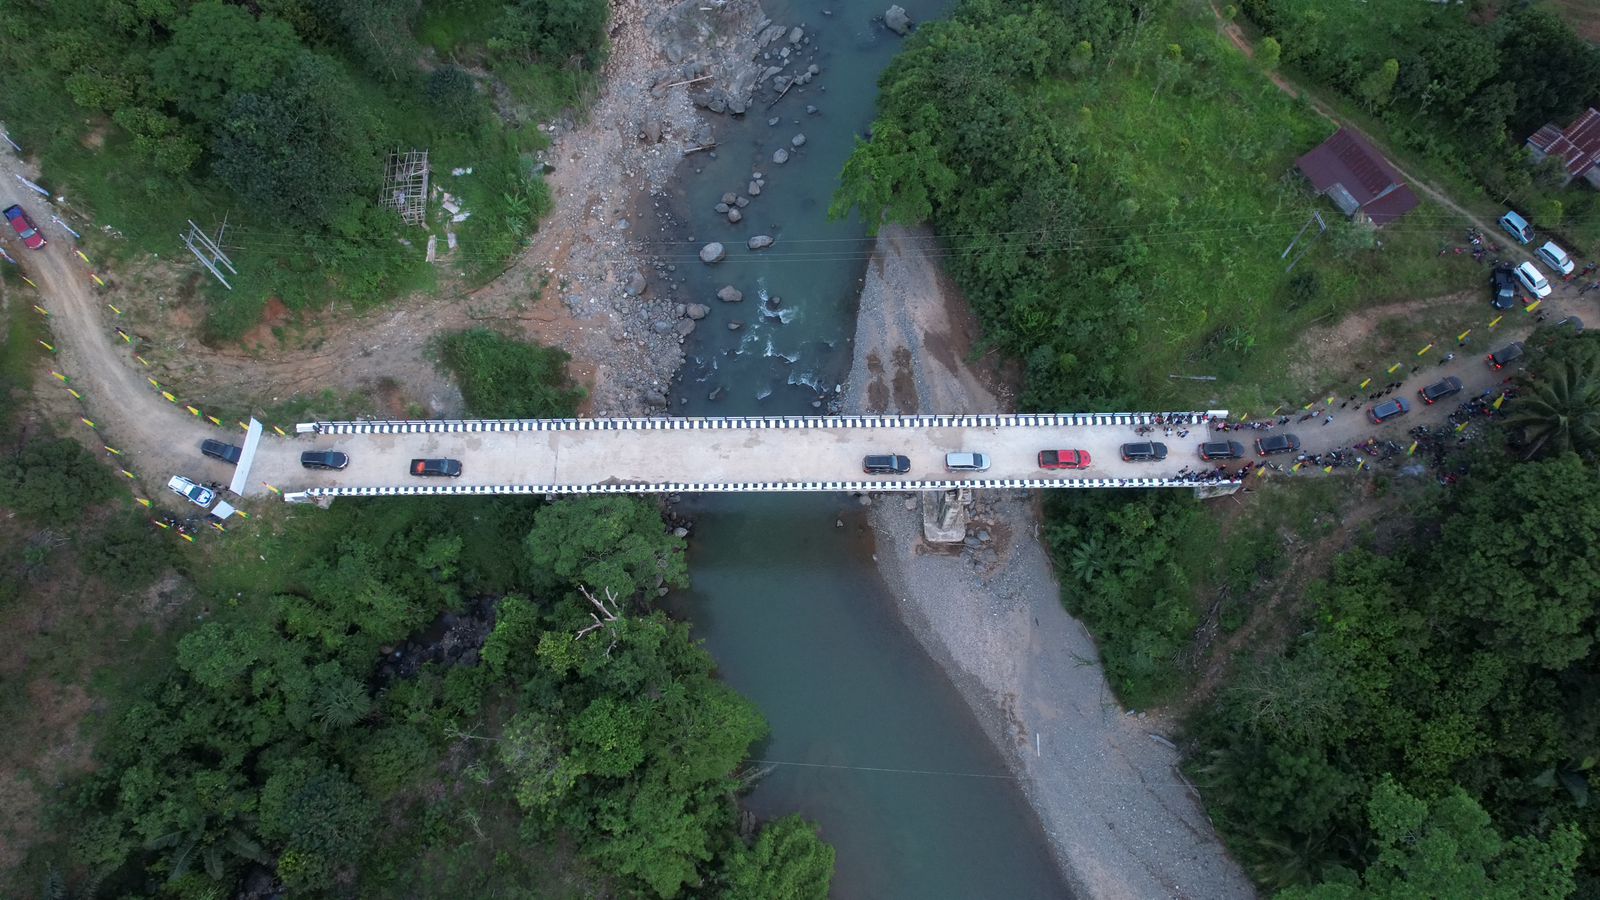 Jembatan Lanrange Sepanjang 90 Meter Diresmikan Gubernur Andi Sudirman